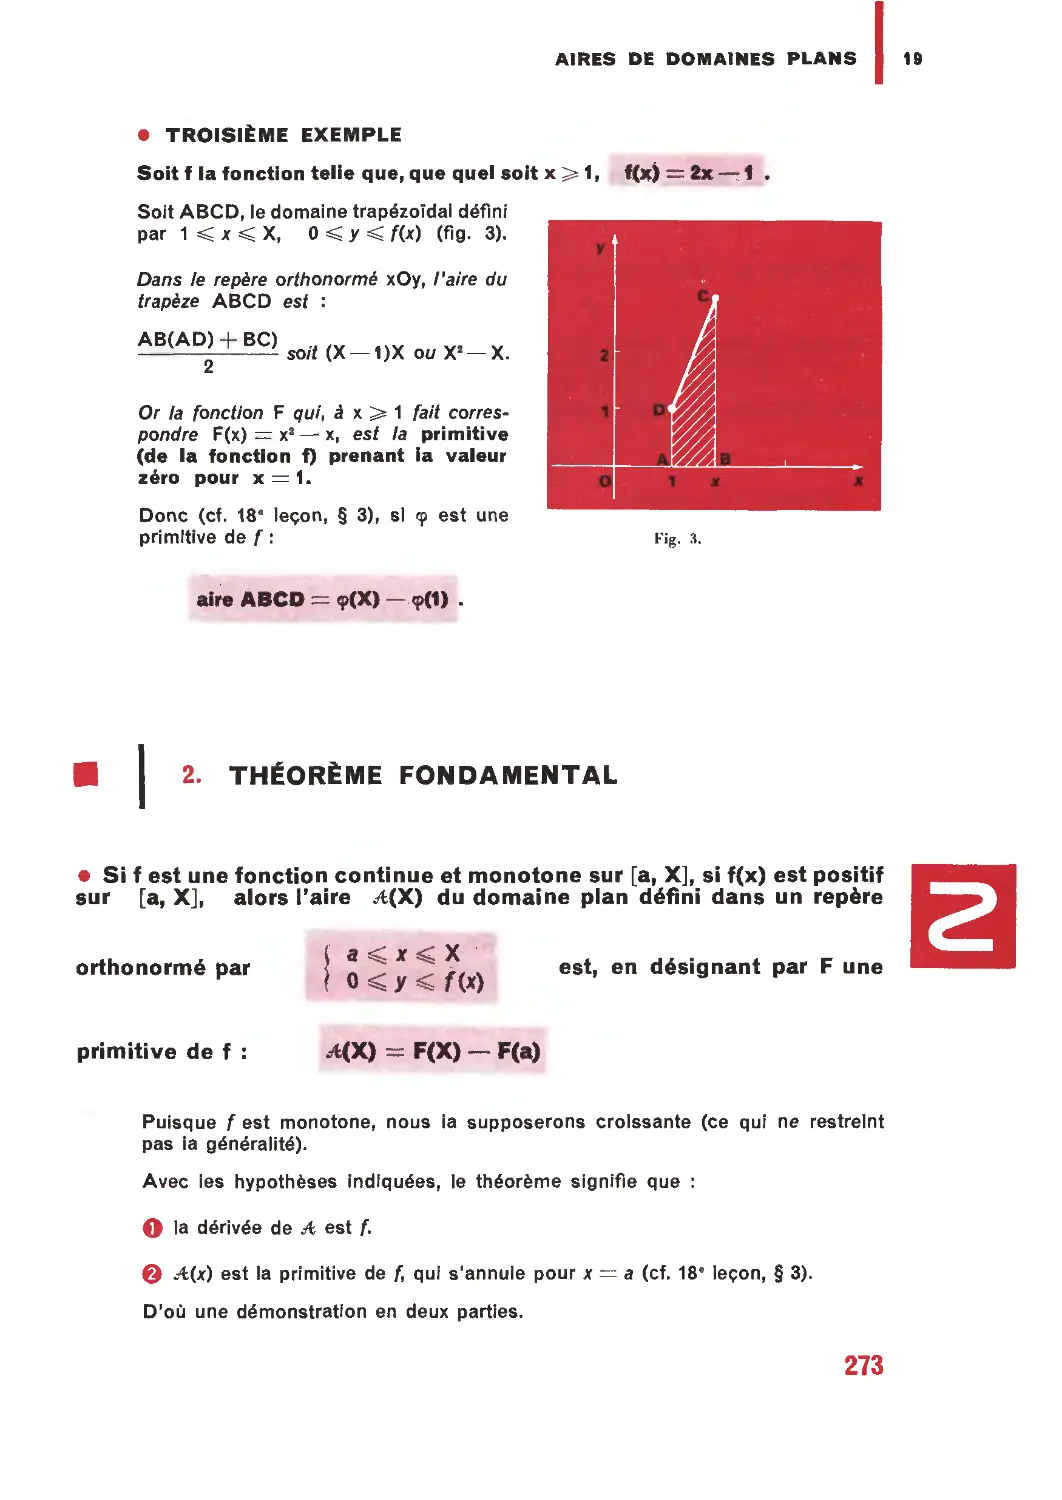 2. Théorème fondamental